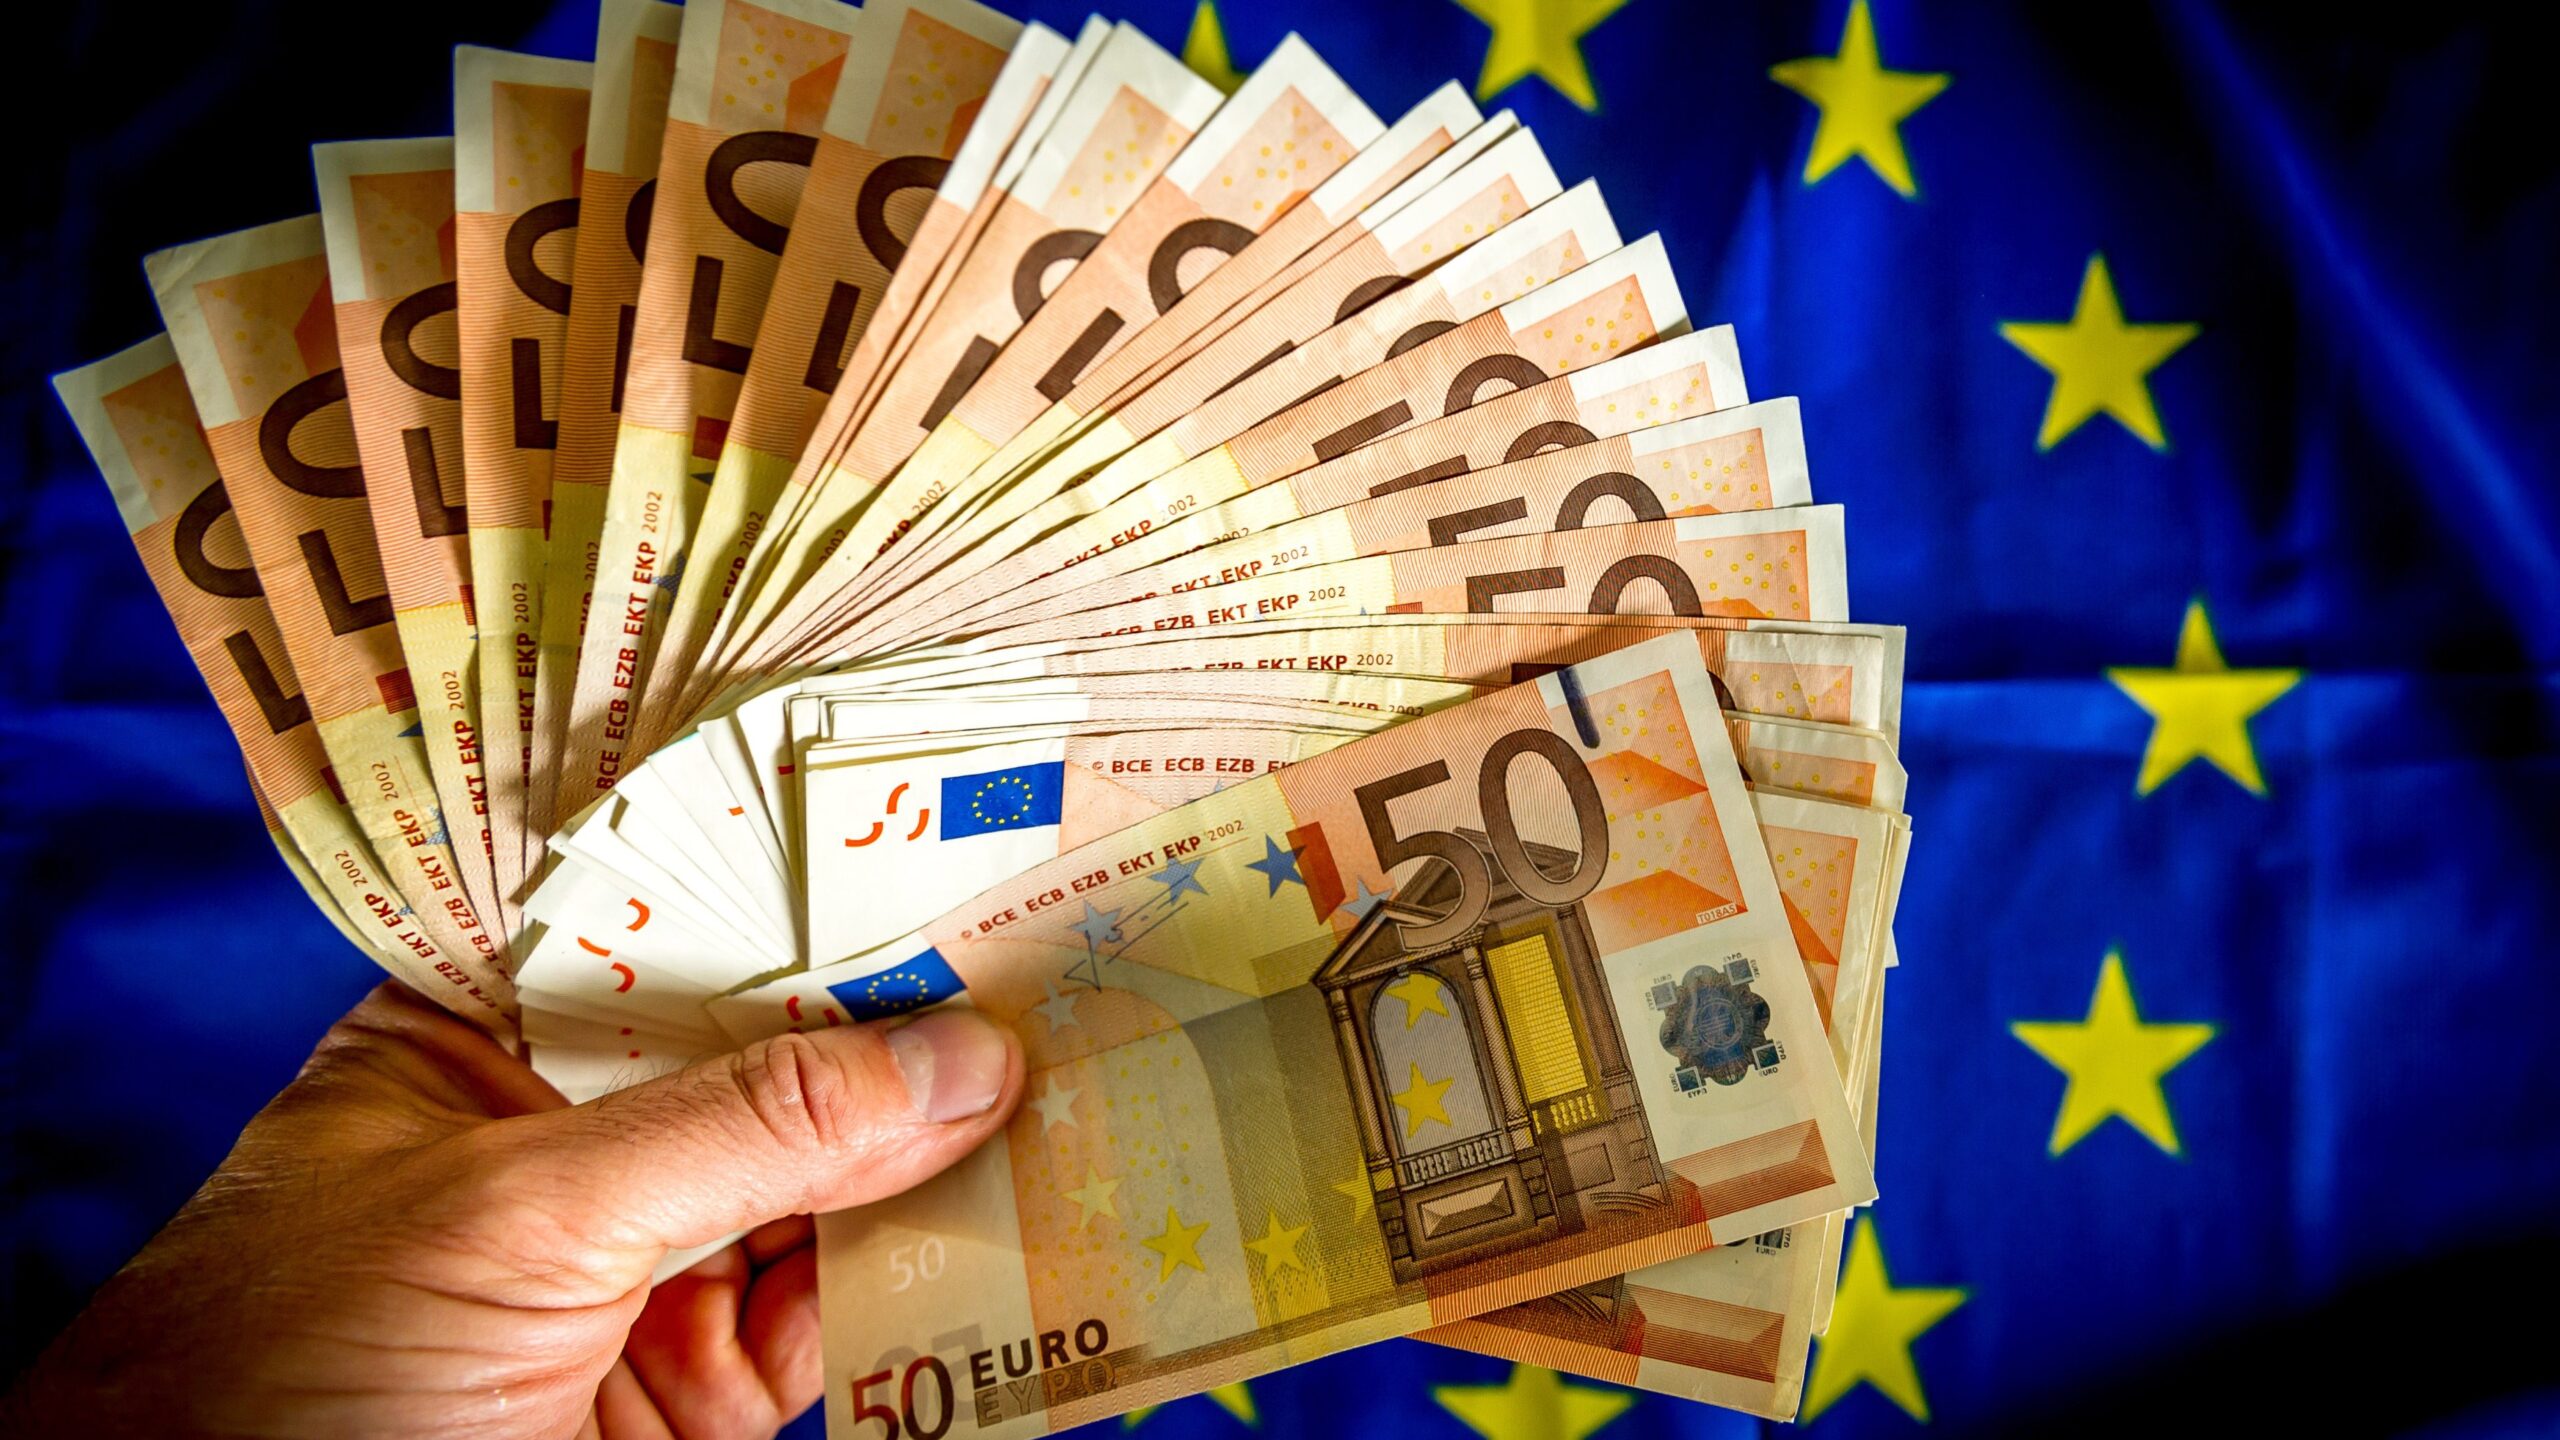 Європа готується економити гроші – для боротьби сама з собою